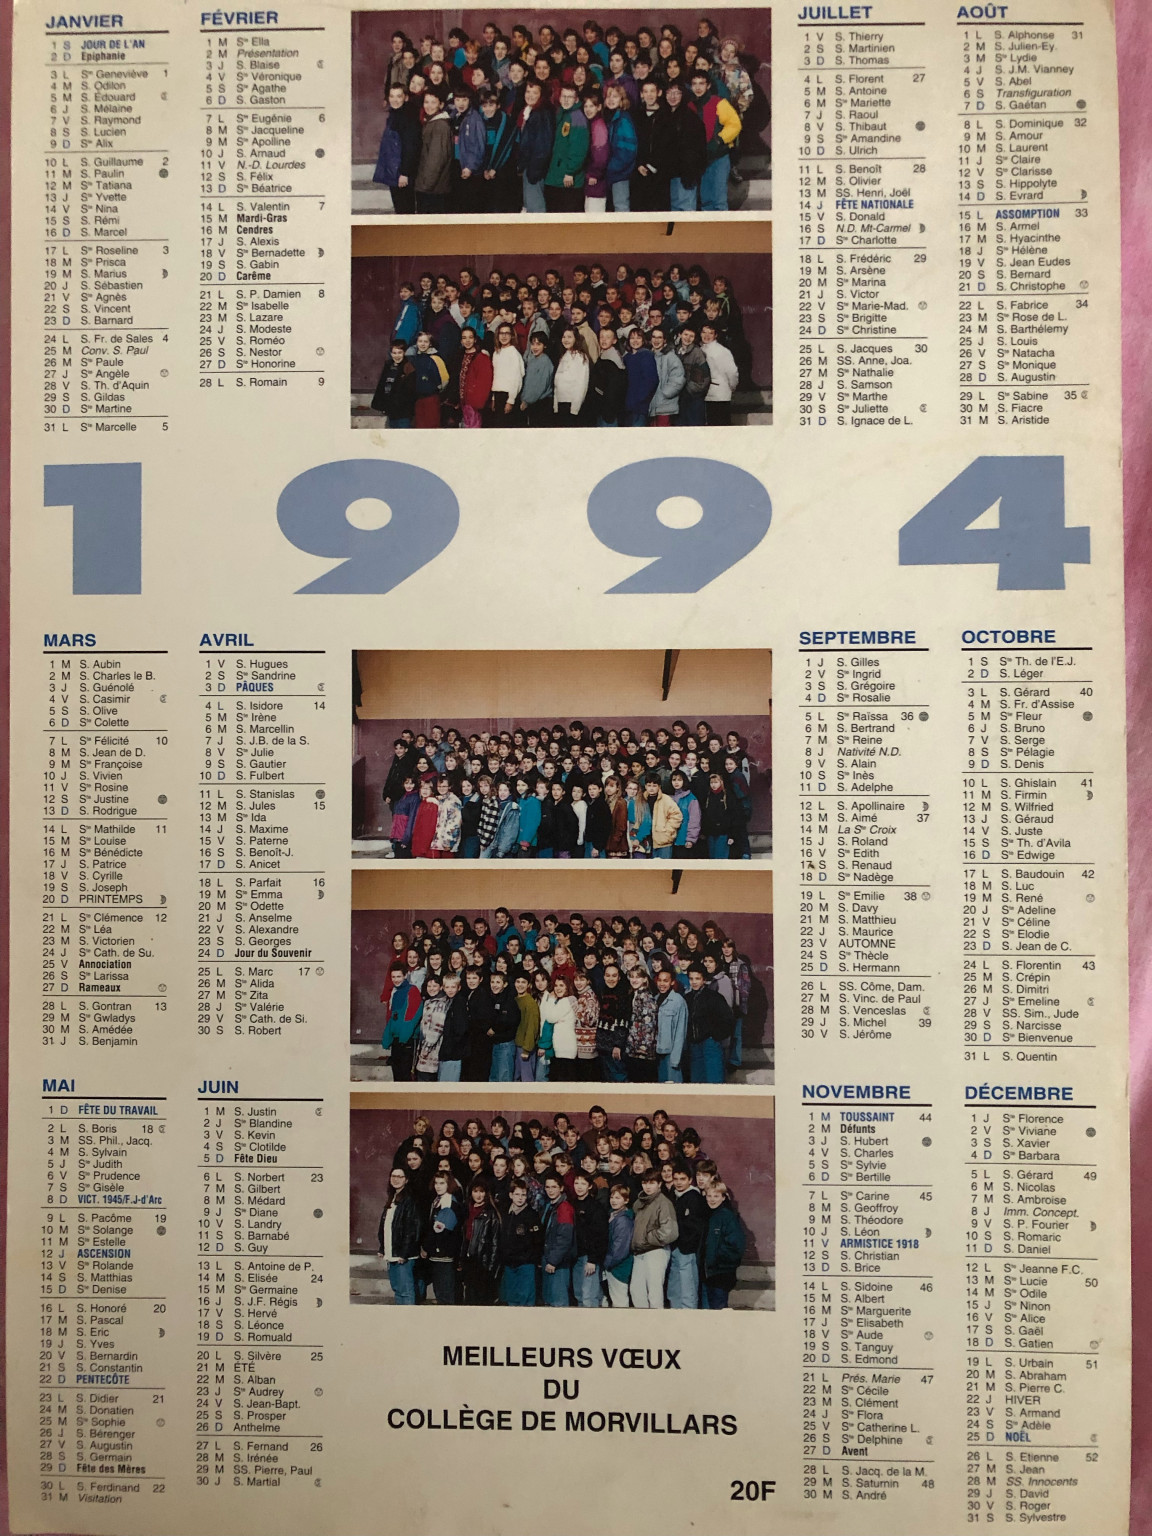 College calendrier 1994